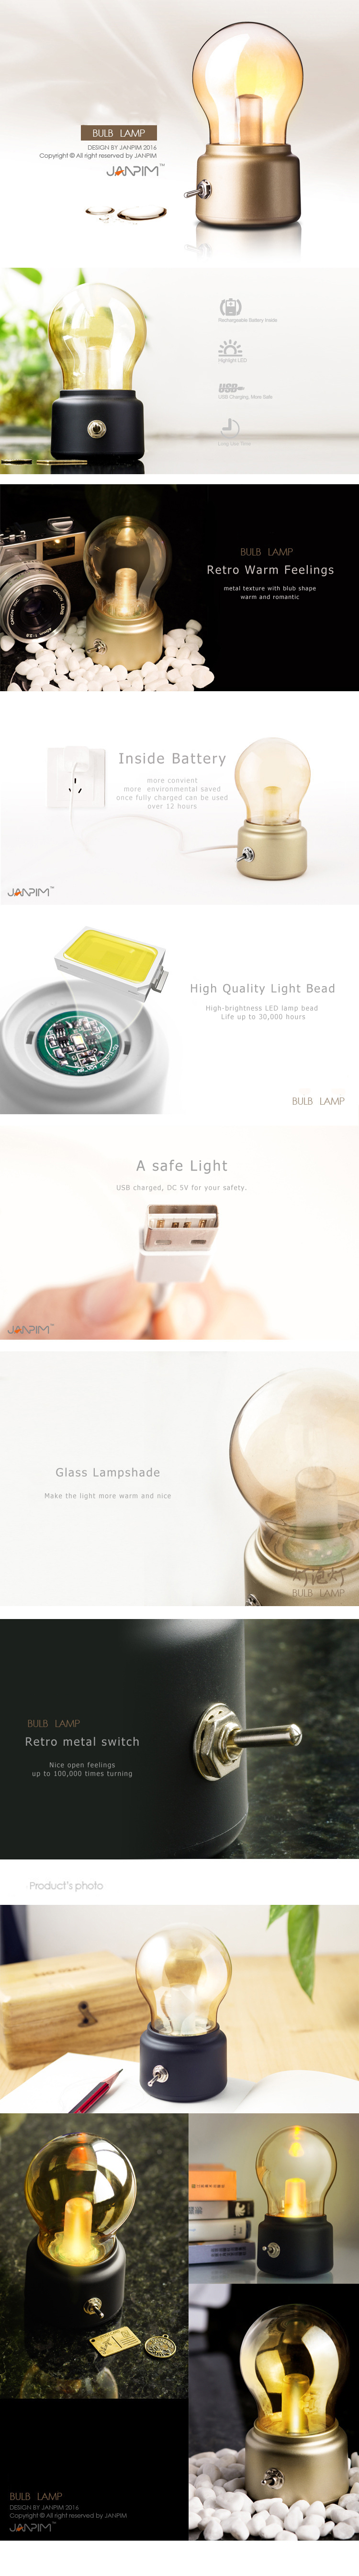 Retro-Bulb-Lamp-USB-Charging-Portable-Mini-Desktop-Light-Bulb-Shape-Small-Night-Light-1083390-1